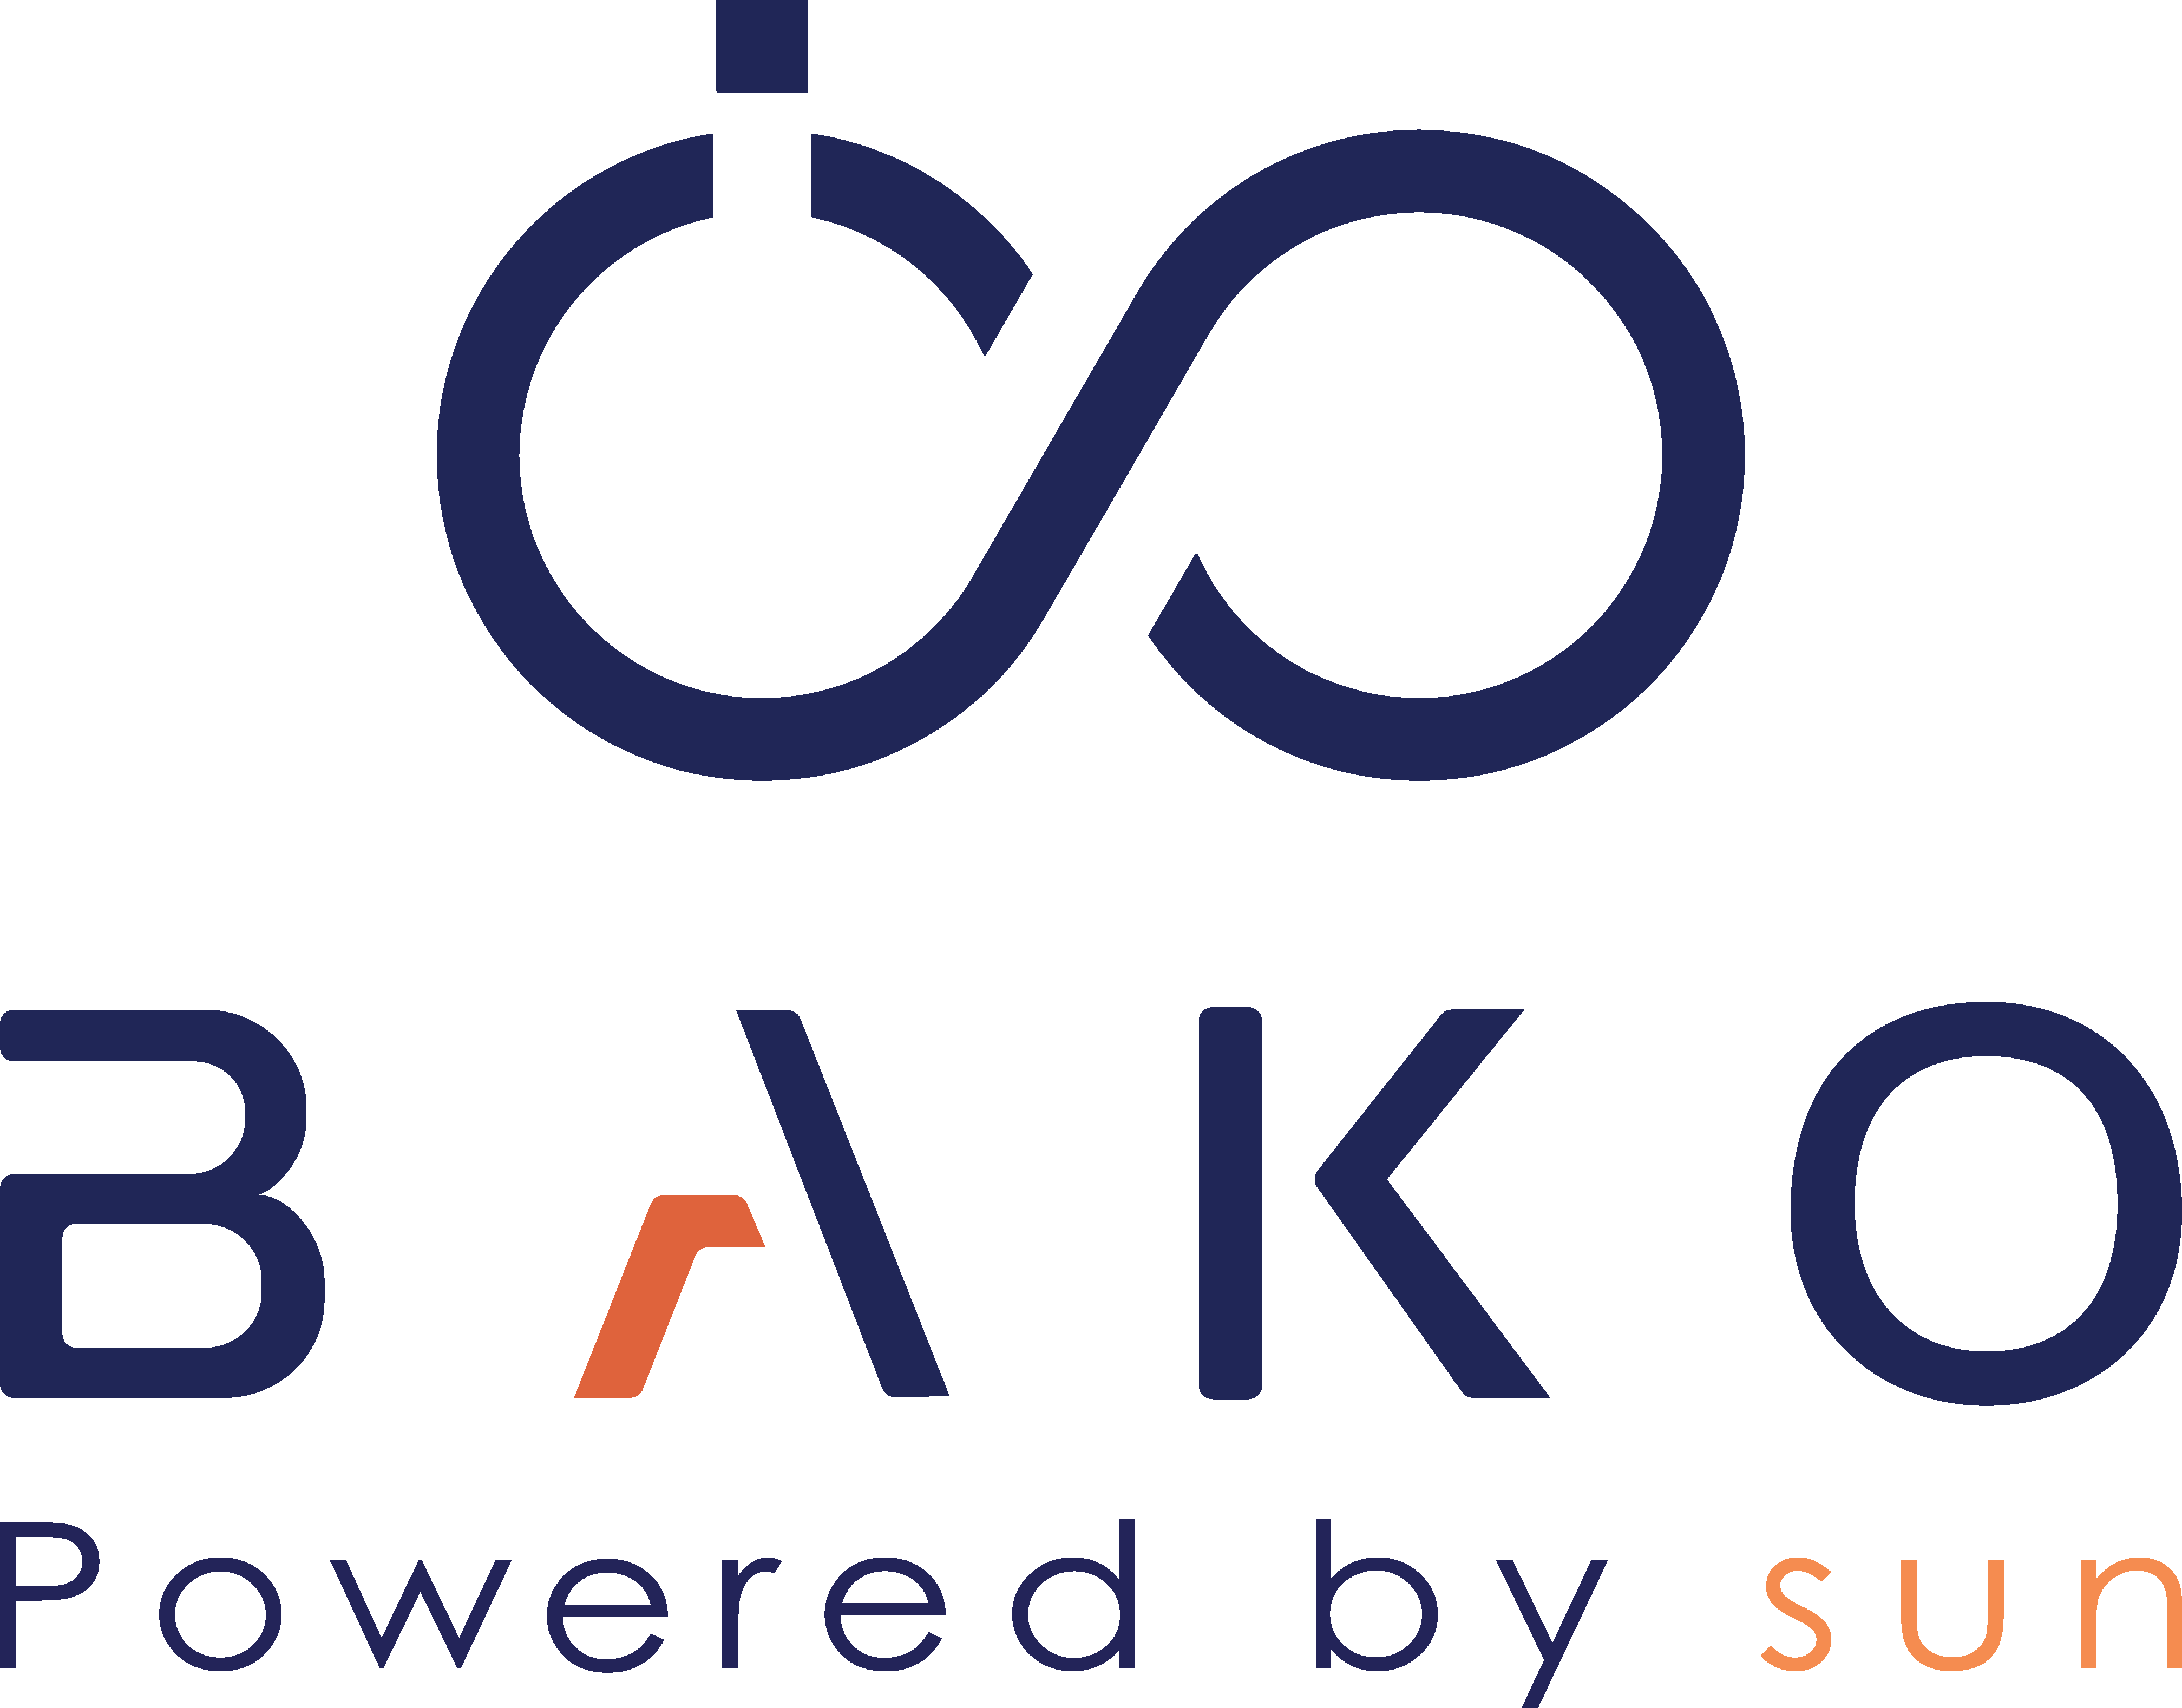 Bako Motors